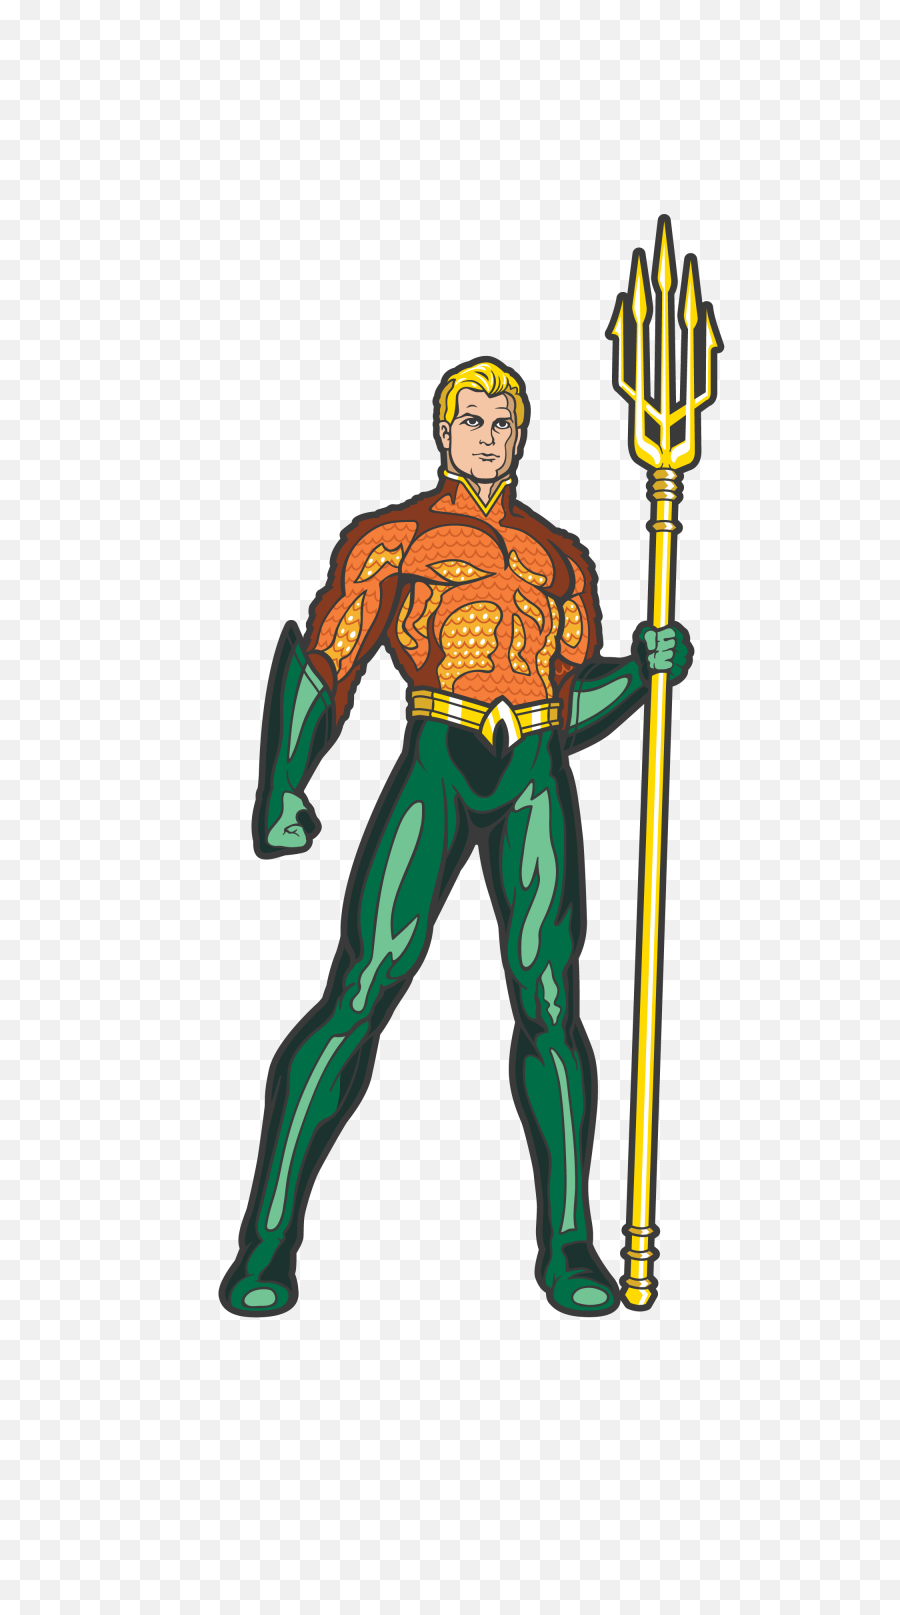 Aquaman Comic Png Transparent Cartoon Justice League Aquaman Comic Aquaman Png Free Transparent Png Images Pngaaa Com